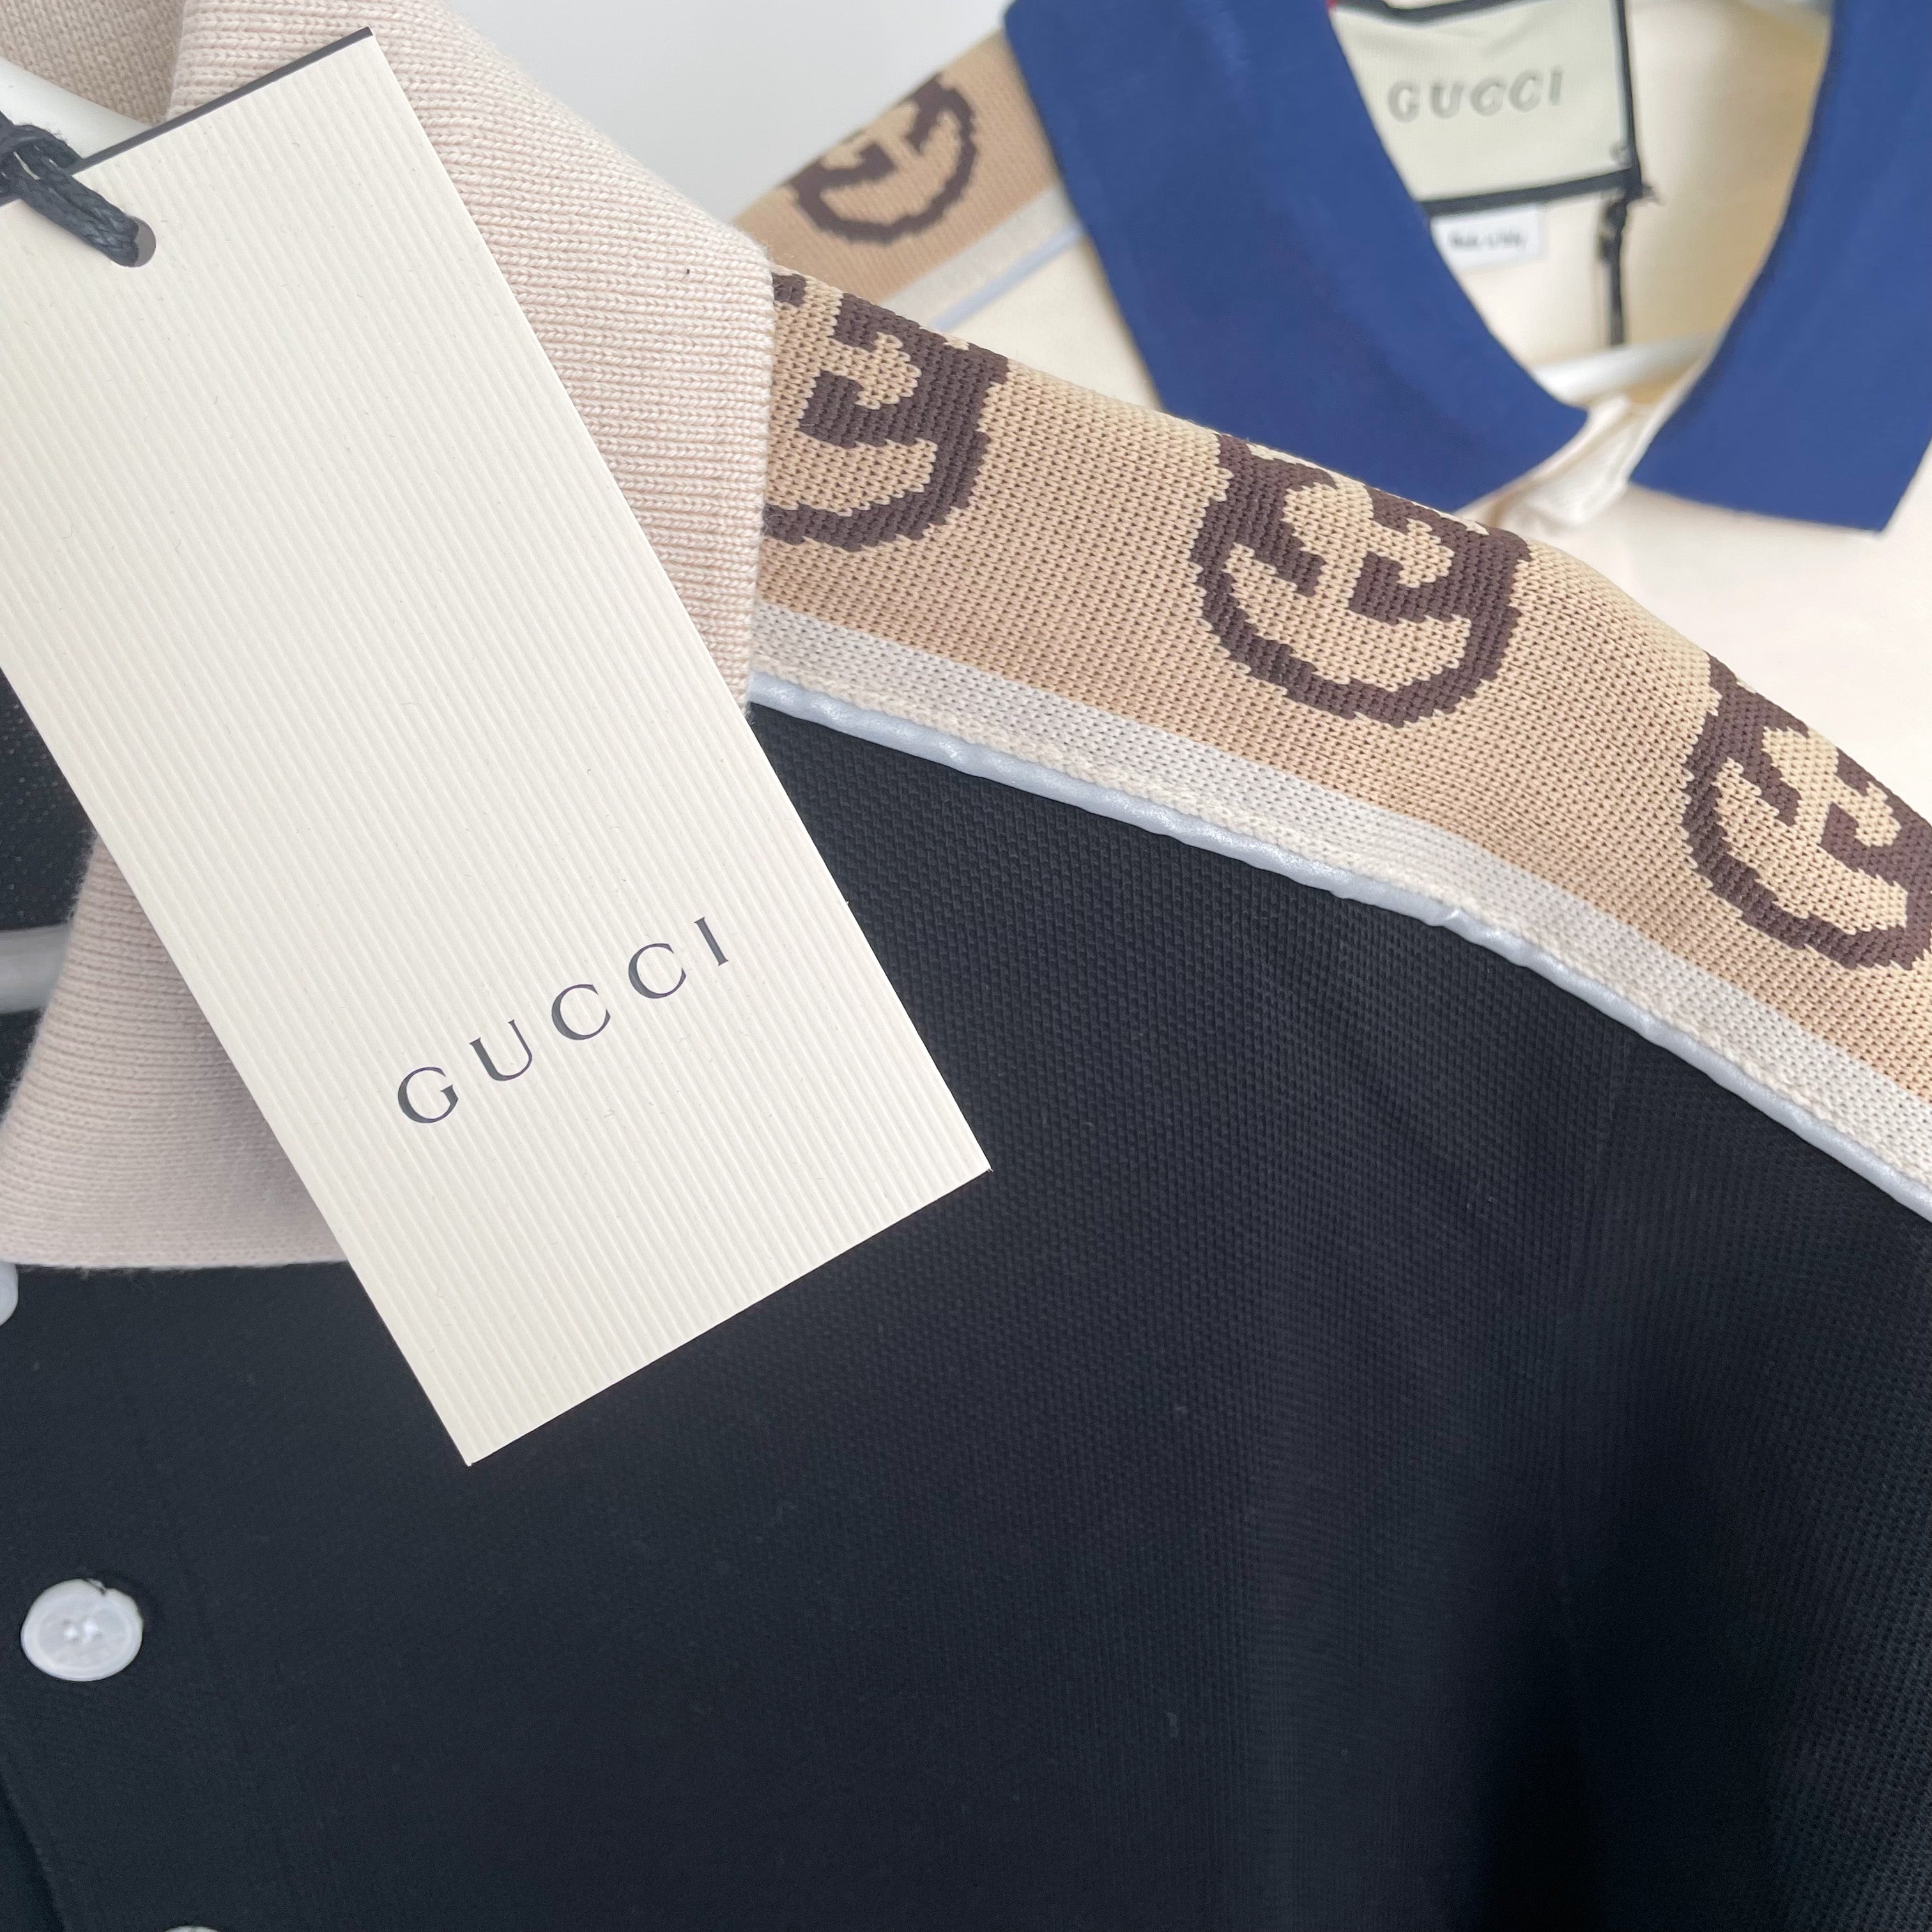 Gucci Interlocking GG Reflective Polo - Black